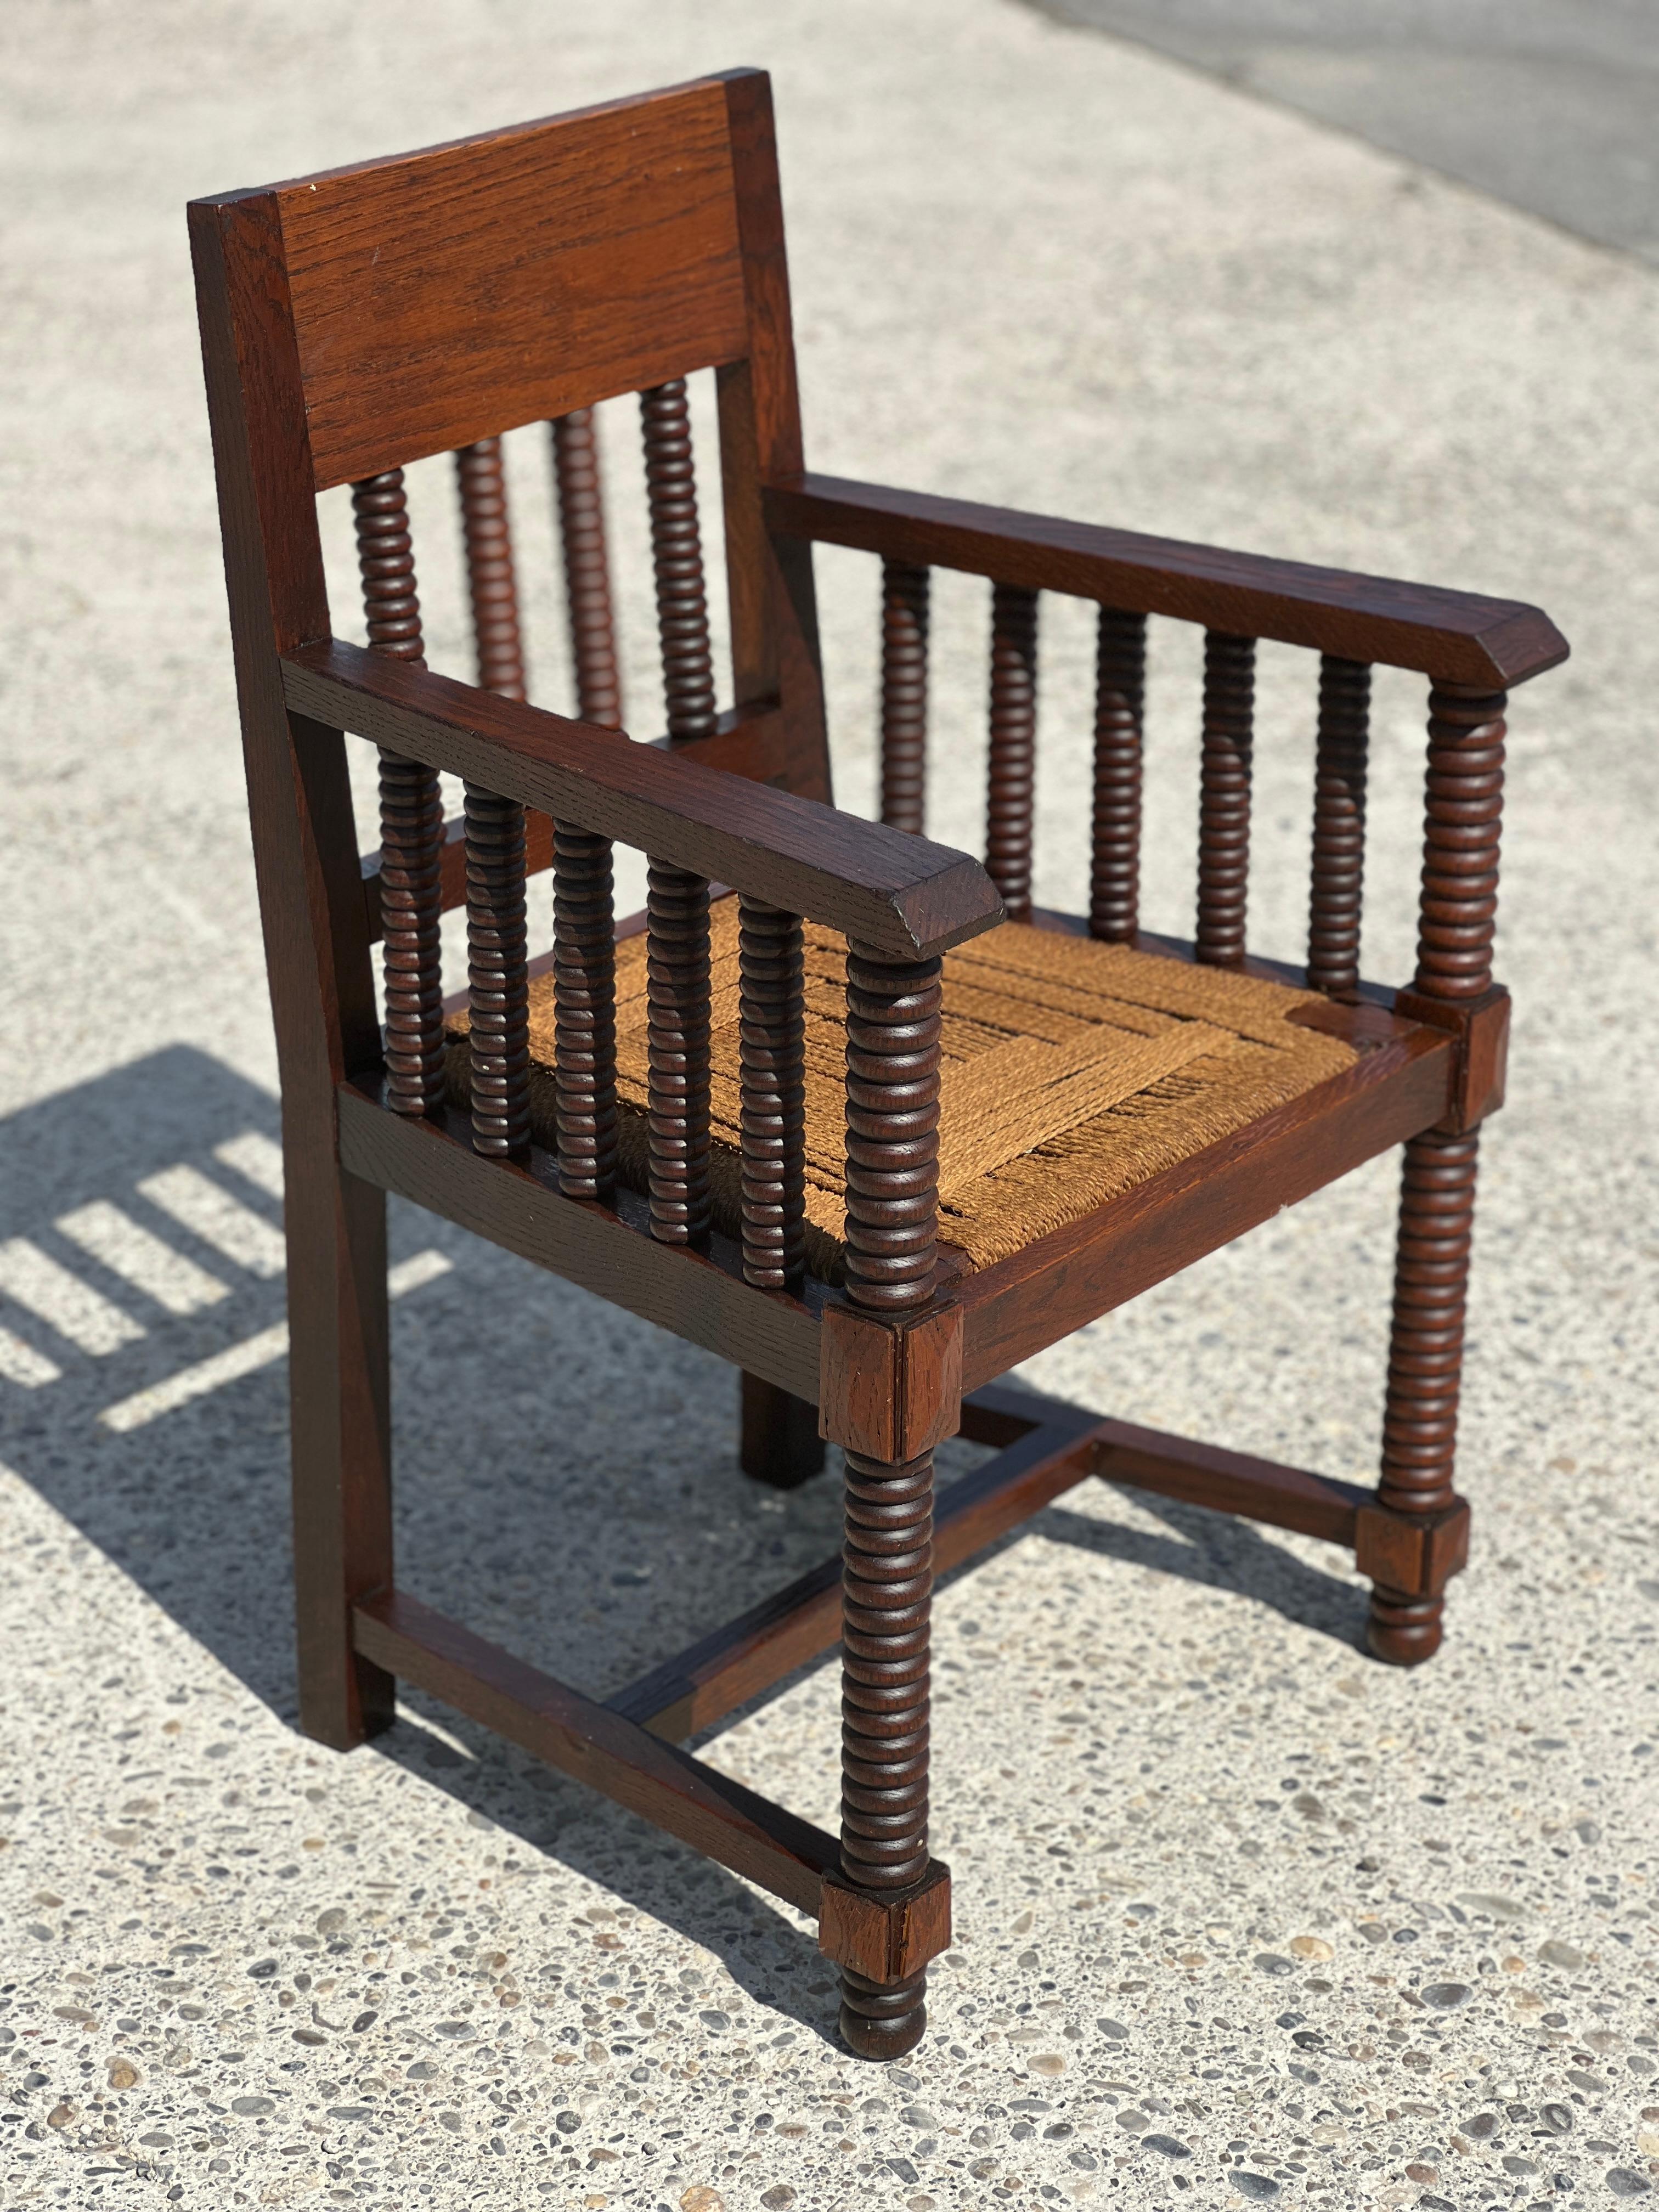 Paire de fauteuils en bois tourné et corde Victor Courtray 1940.
Le cadre est en chêne et en très bon état, de même que les sièges en corde. 
Idéal pour un salon ou une chambre à coucher 